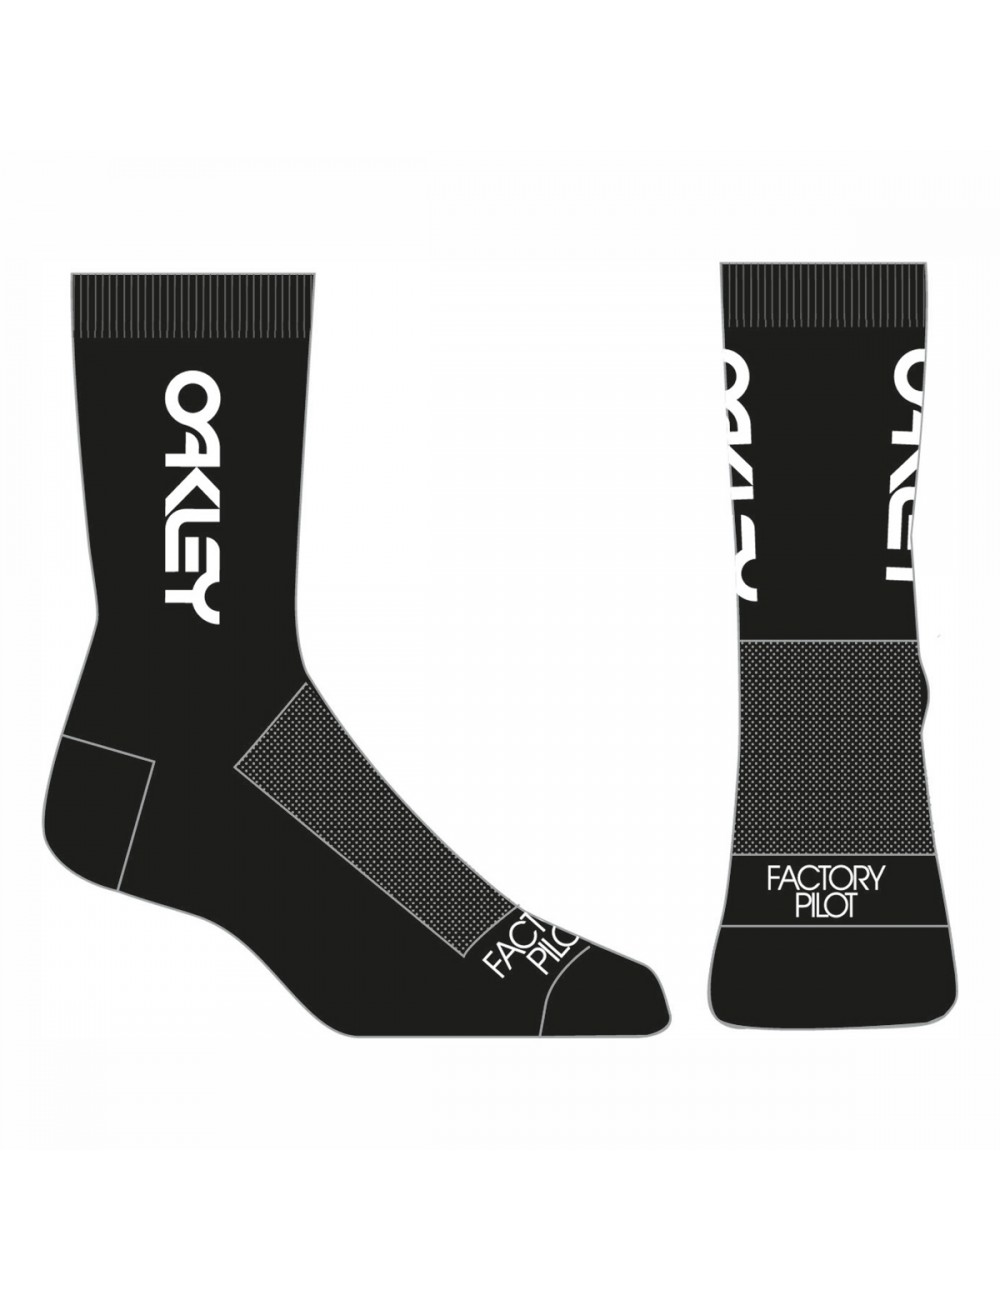 Oakley Factory Pilot Socks - Blackout